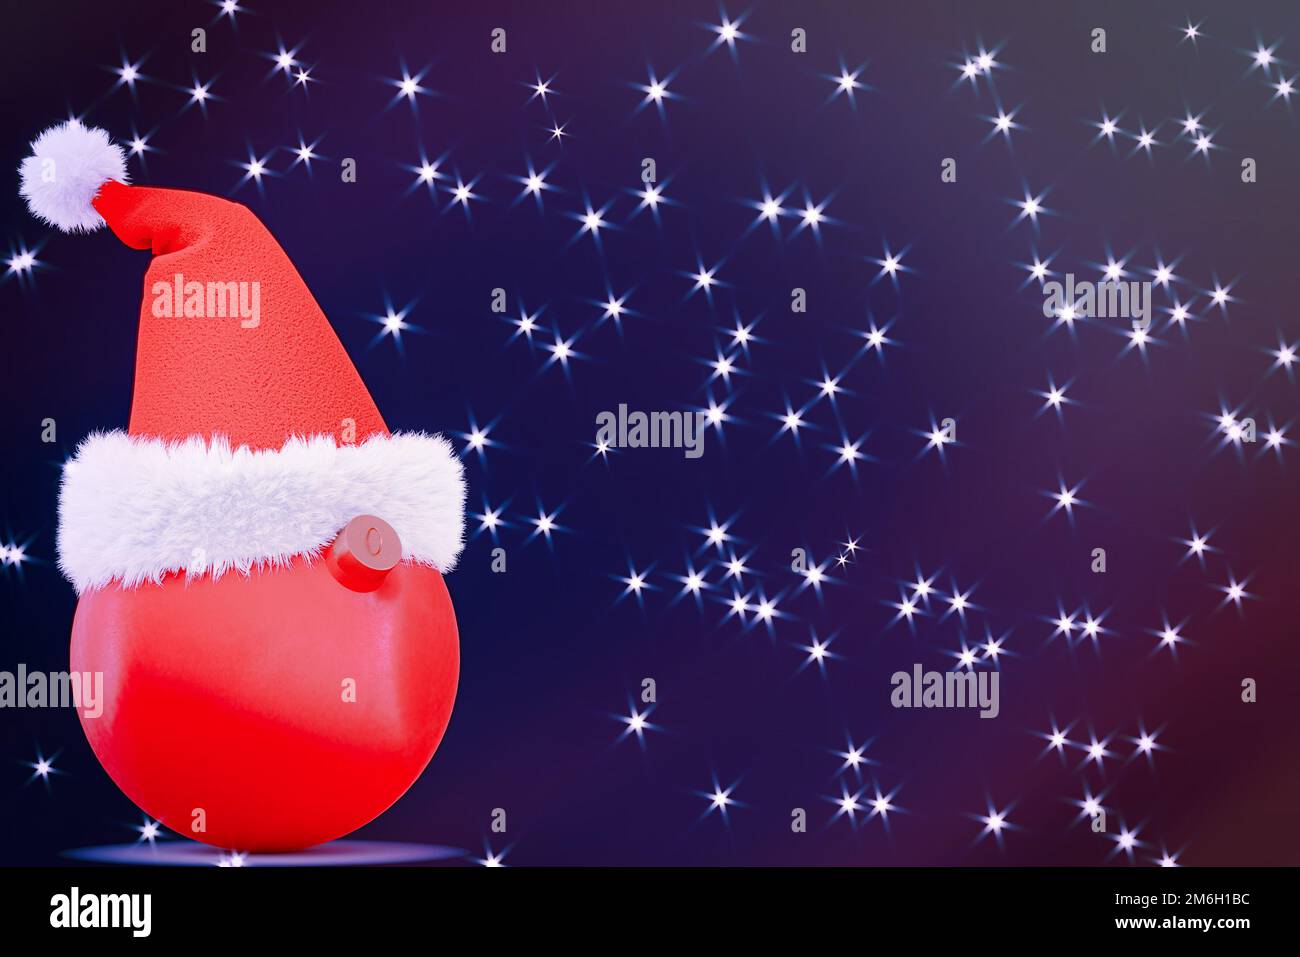 Weihnachtsmann-Hut auf einem runden, roten Weihnachtsspielzeug. Auf dunkelblauem Hintergrund mit leuchtenden Sternen. 3D-Rendering Stockfoto